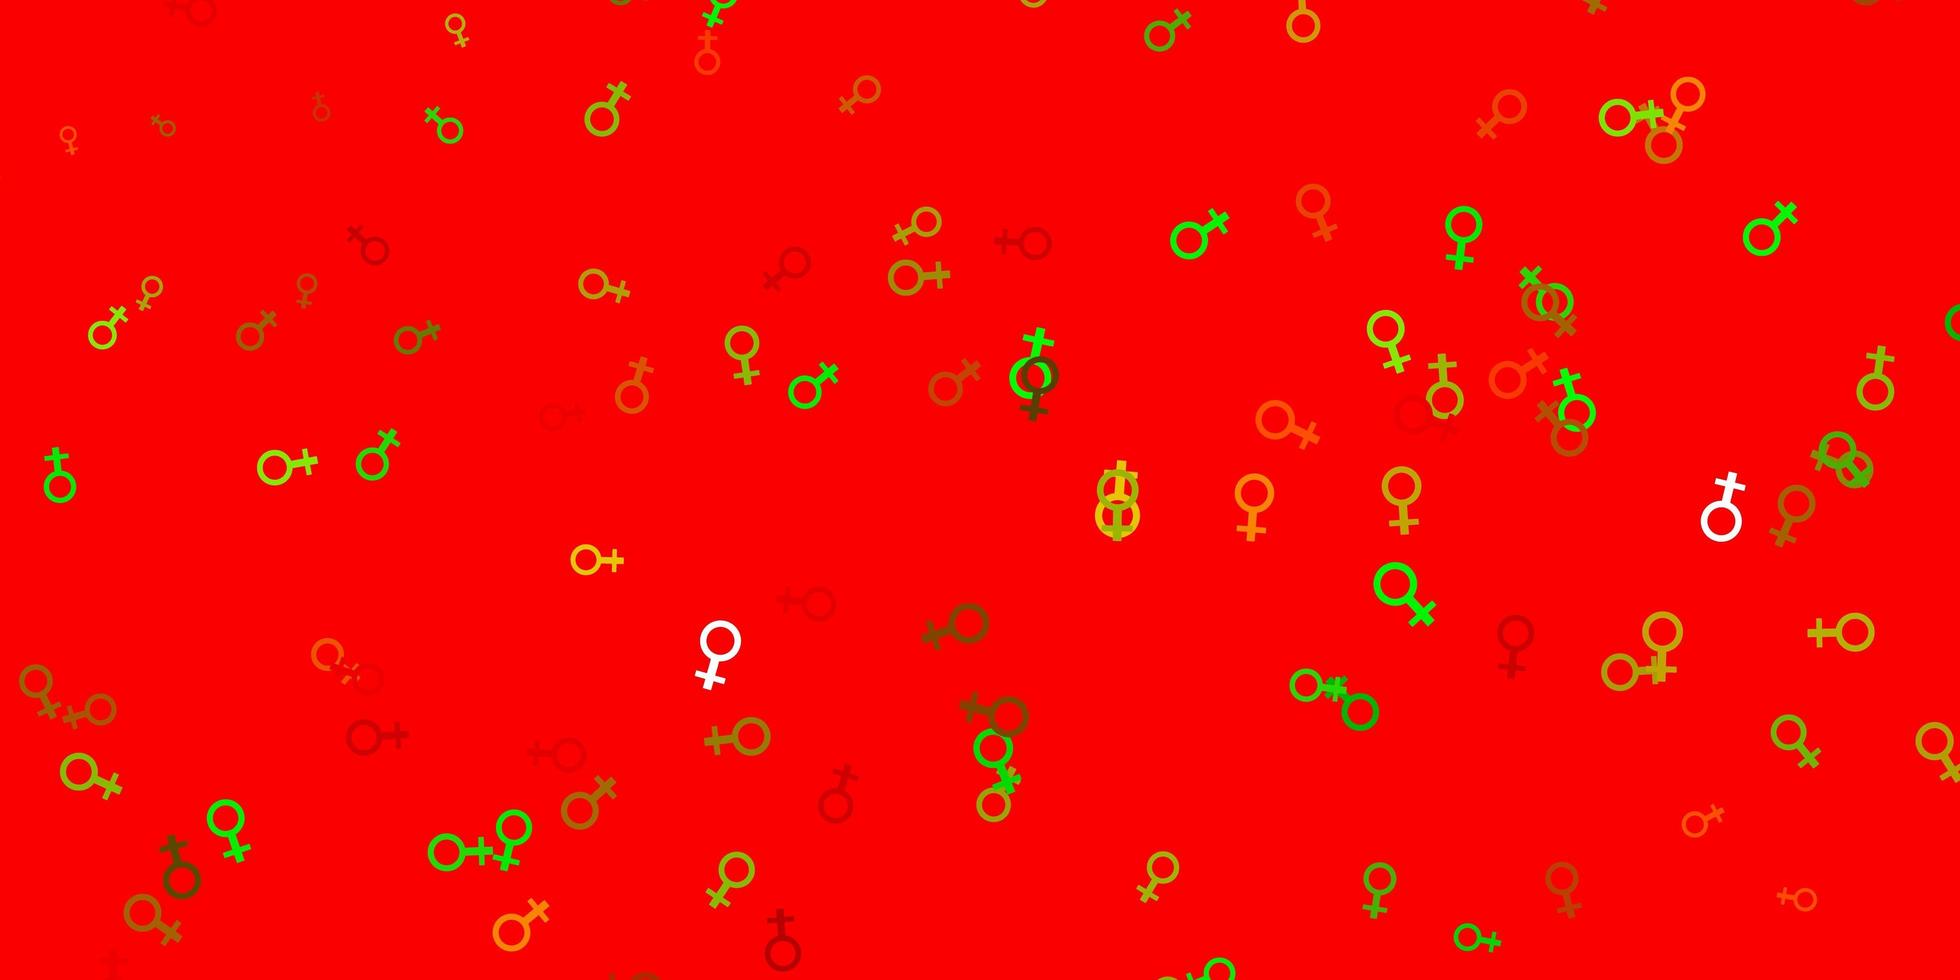 ljusgrön, röd vektorstruktur med kvinnors rättighetssymboler. vektor